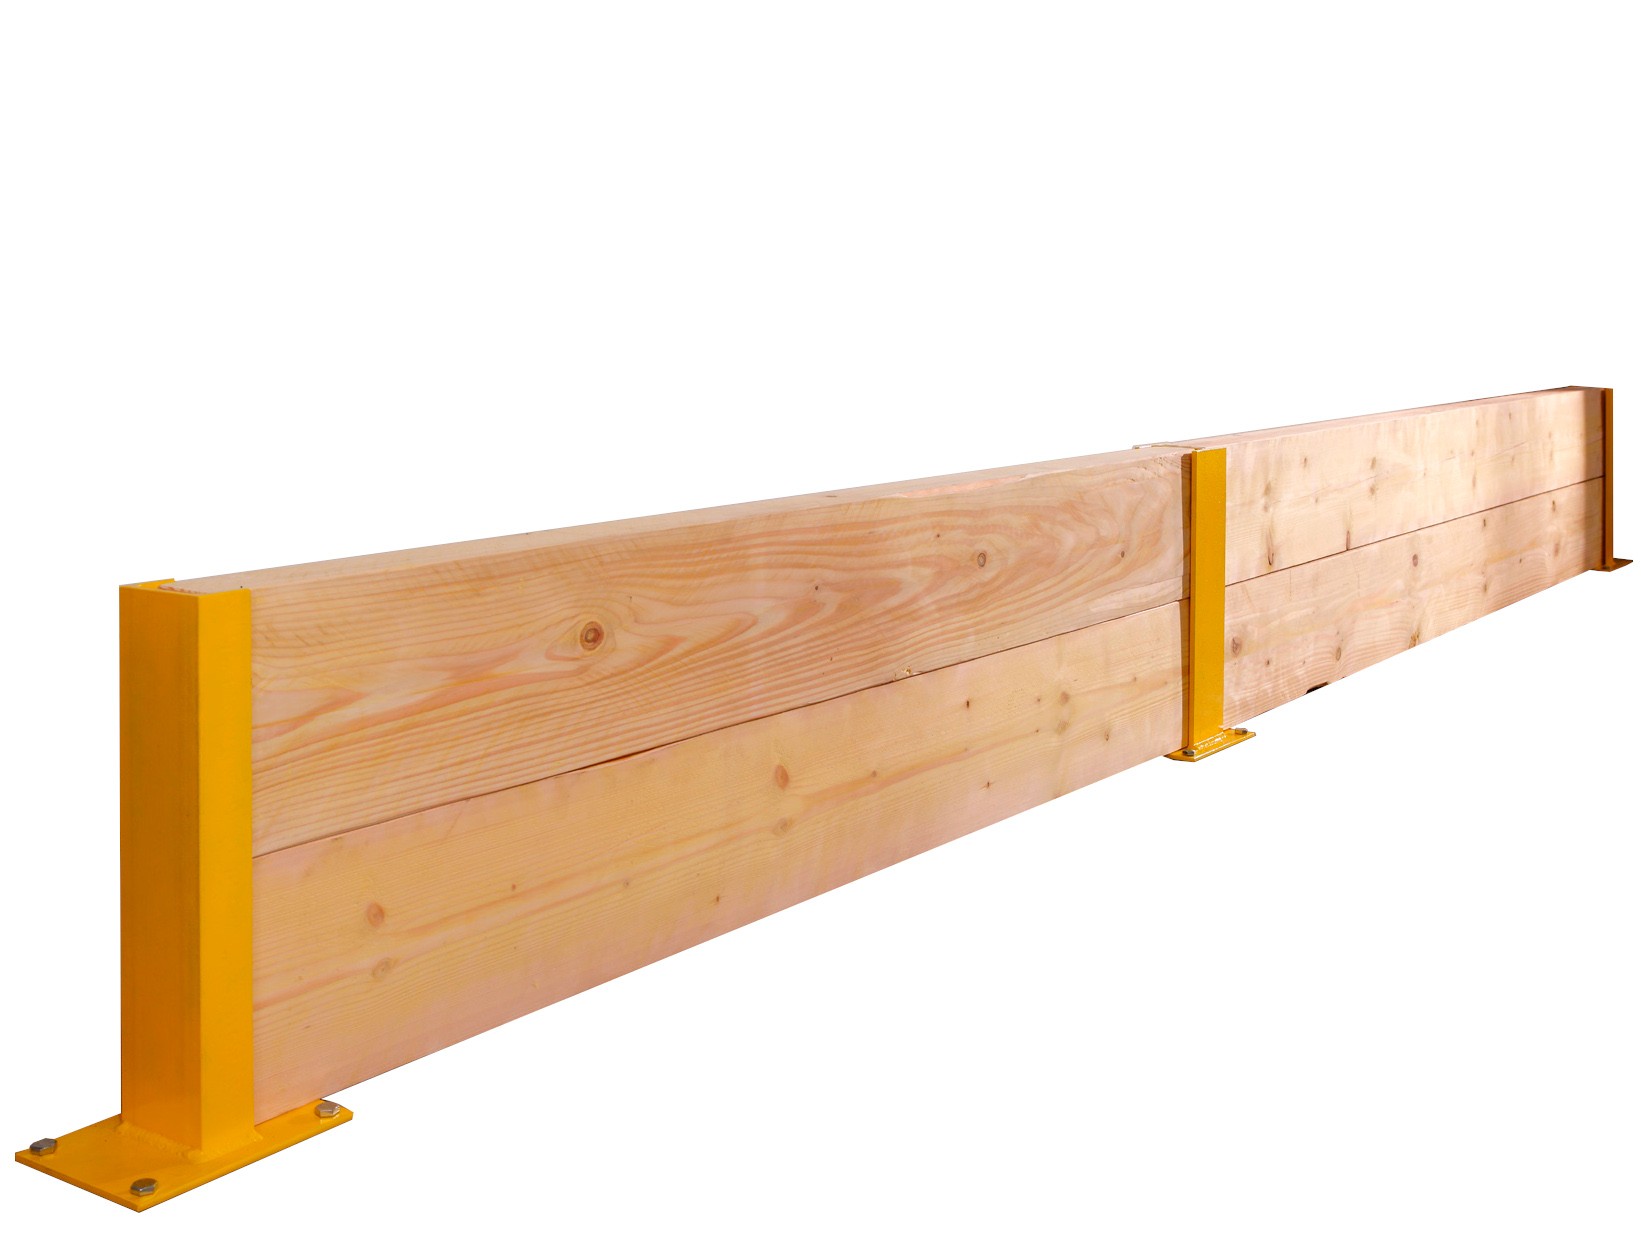 Stojaki i zabezpieczenia ścian za pomocą drewnianych belek